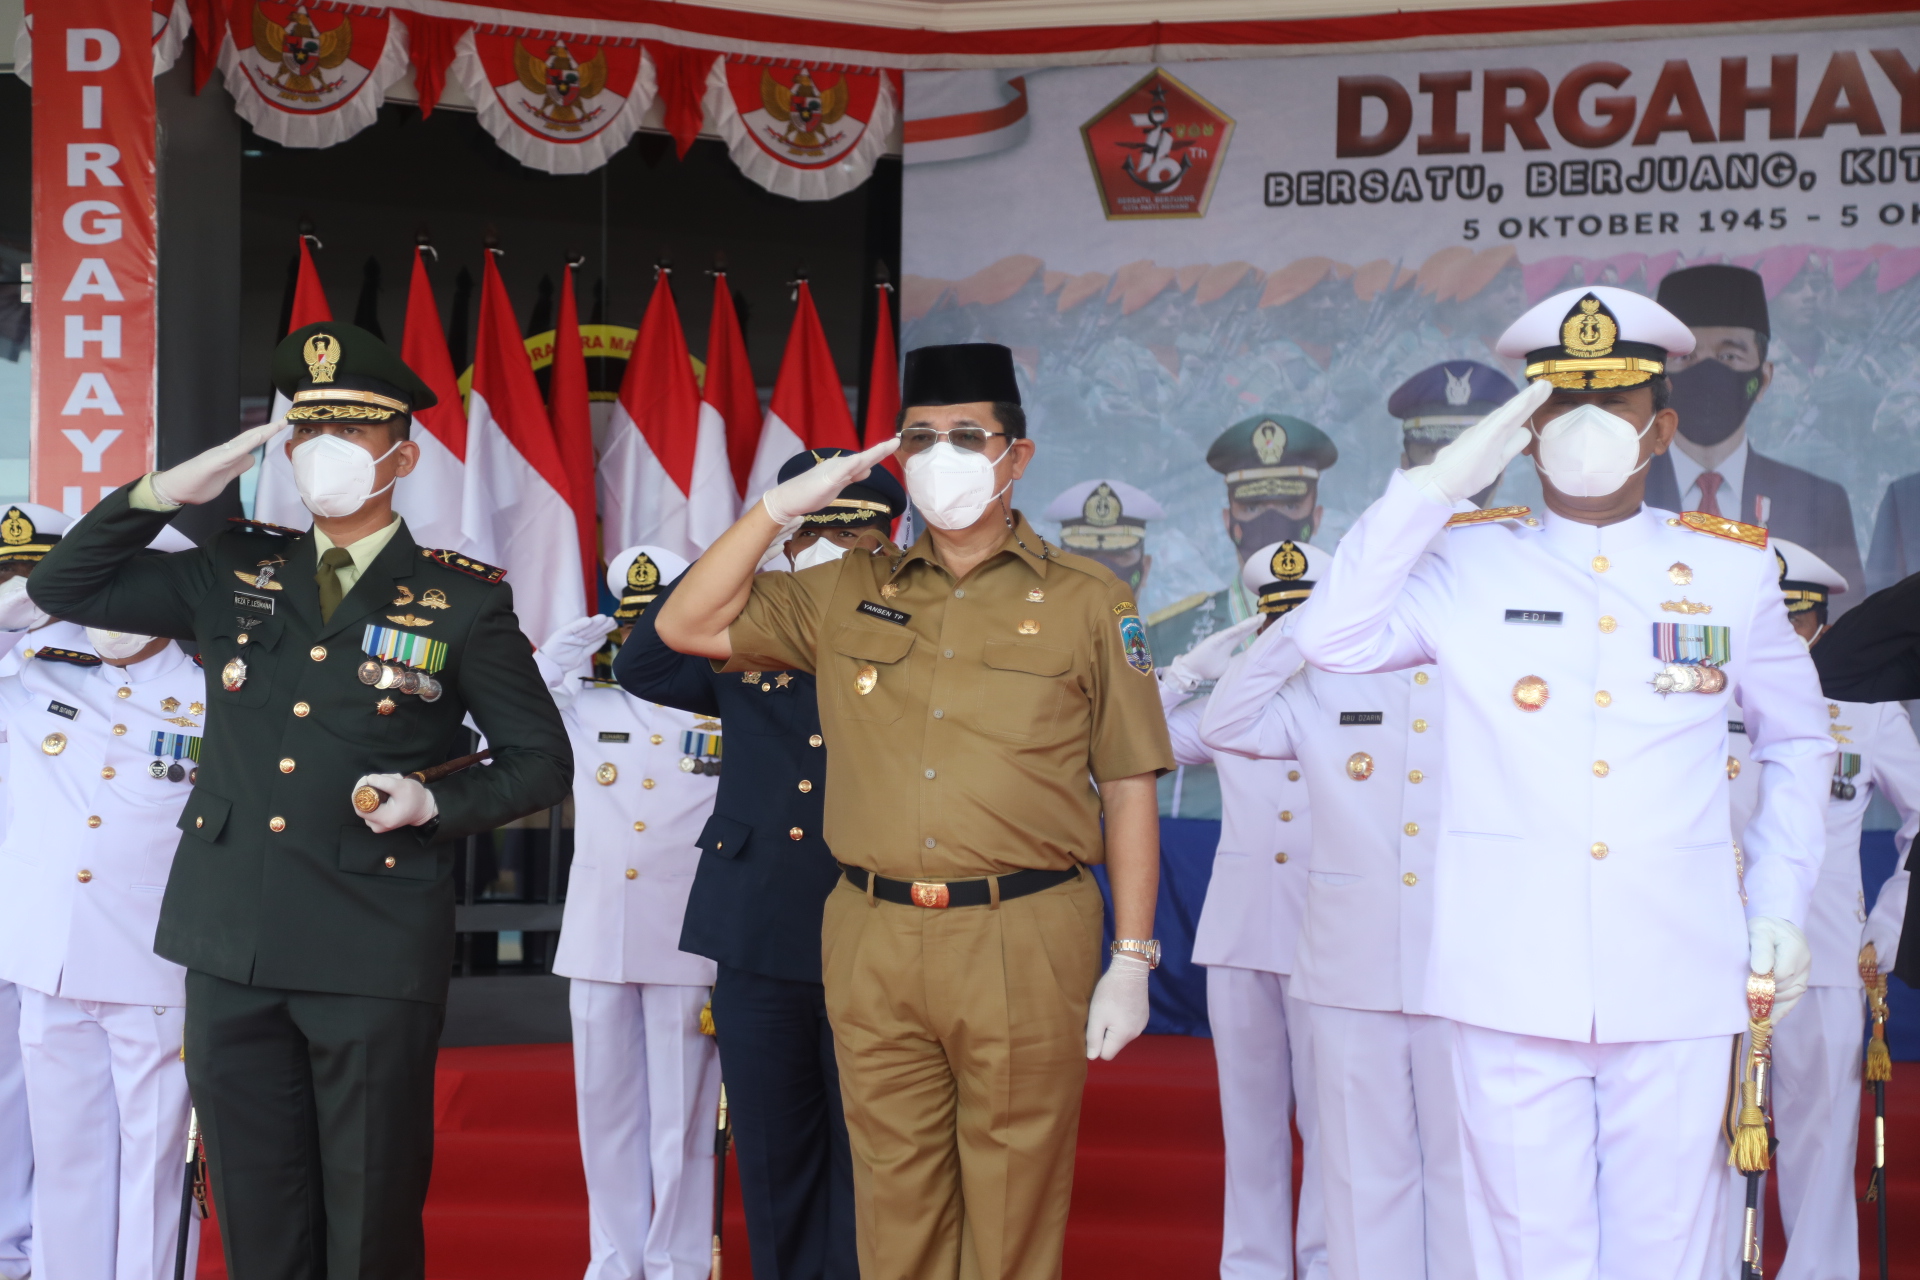 Wagub Apresiasi Kinerja TNI dalam Menjaga Stabilitas Negara